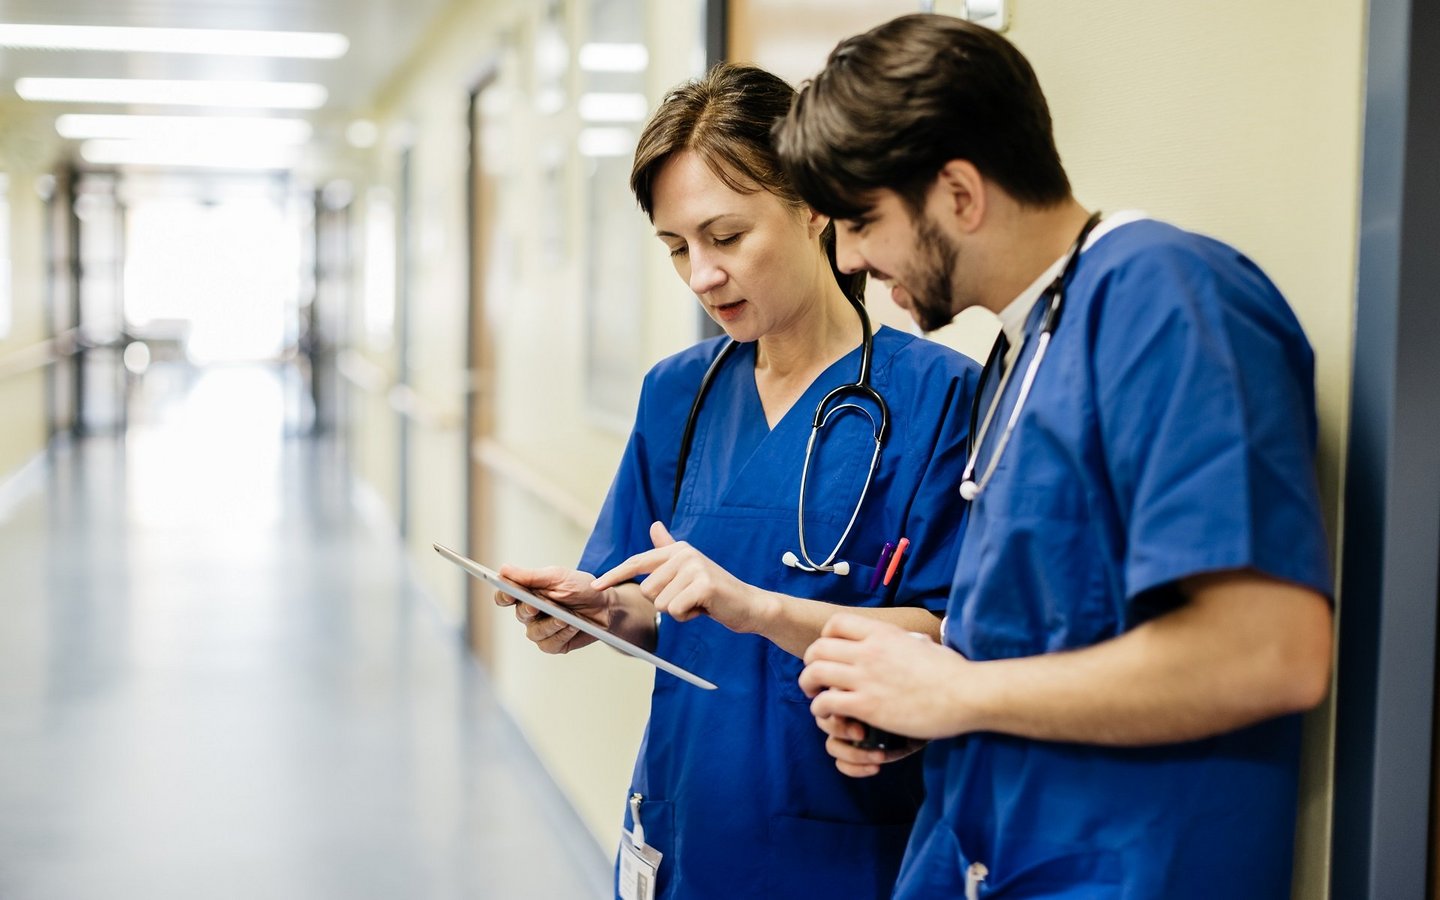 Medizinisches Personal schaut auf ein Tablet in einer medizinischen Einrichtung